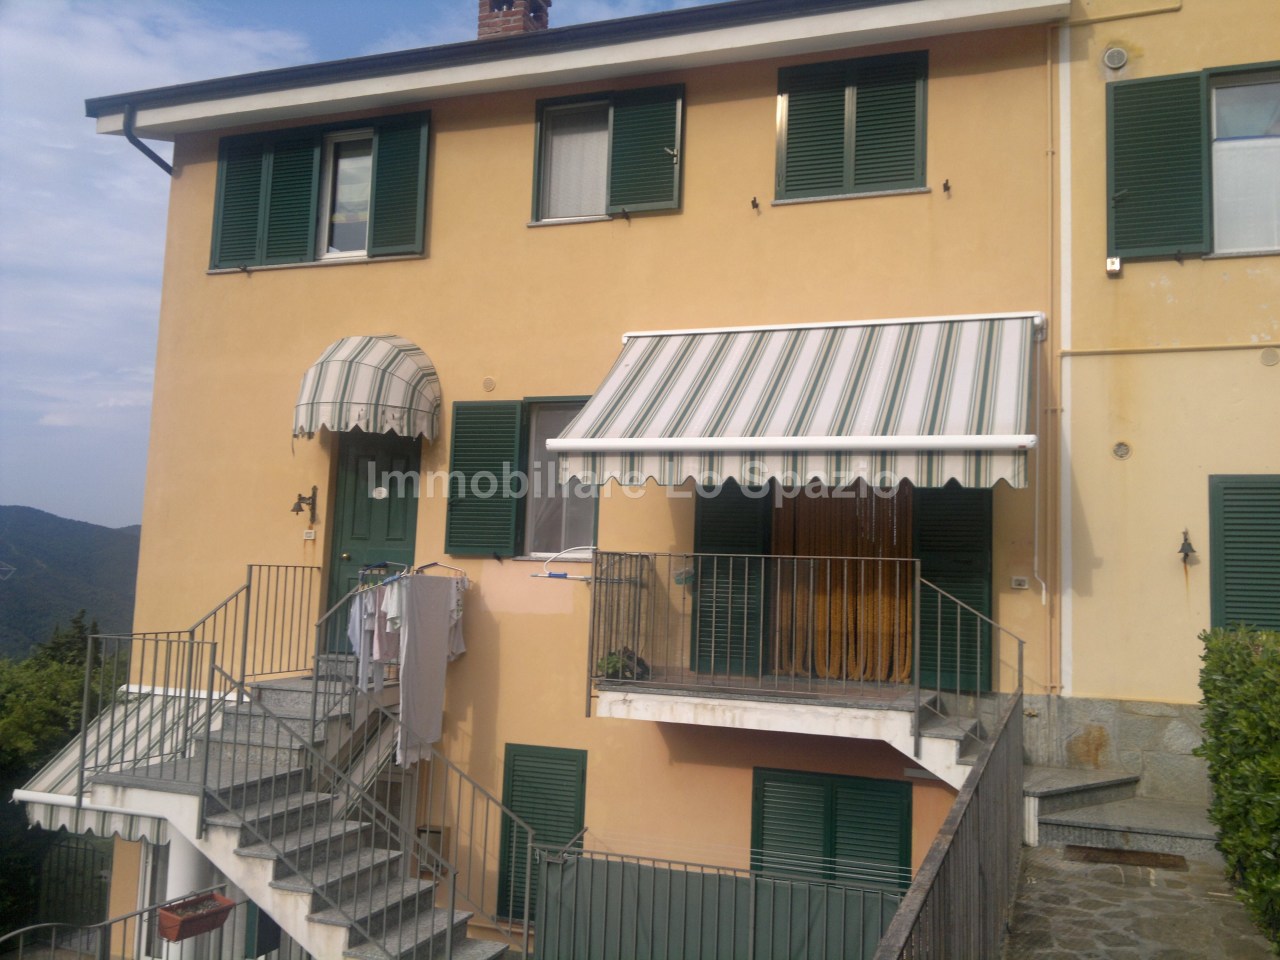 Appartamento in vendita a Andora, 2 locali, prezzo € 115.000 | PortaleAgenzieImmobiliari.it